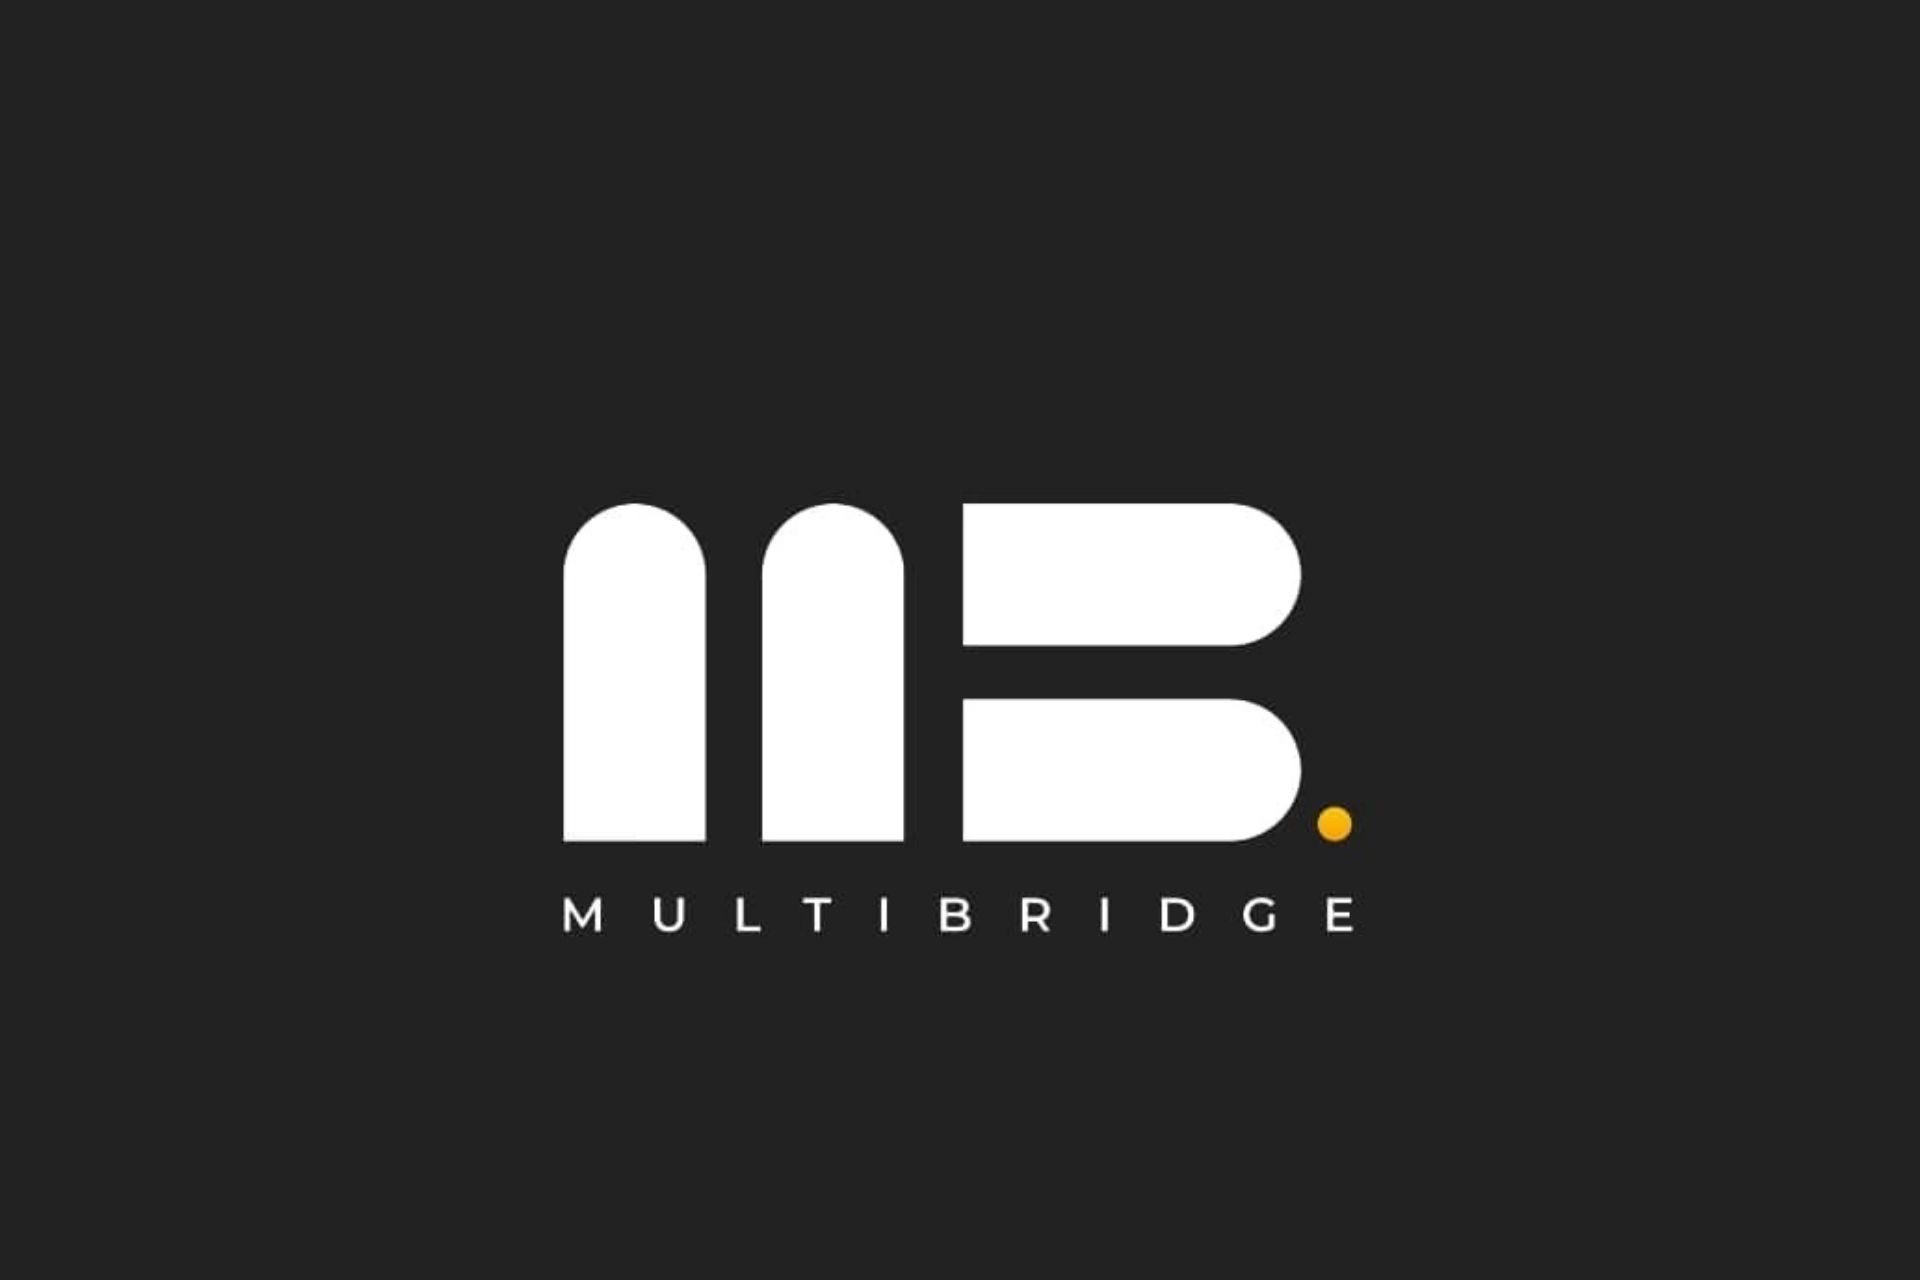 Multibridge